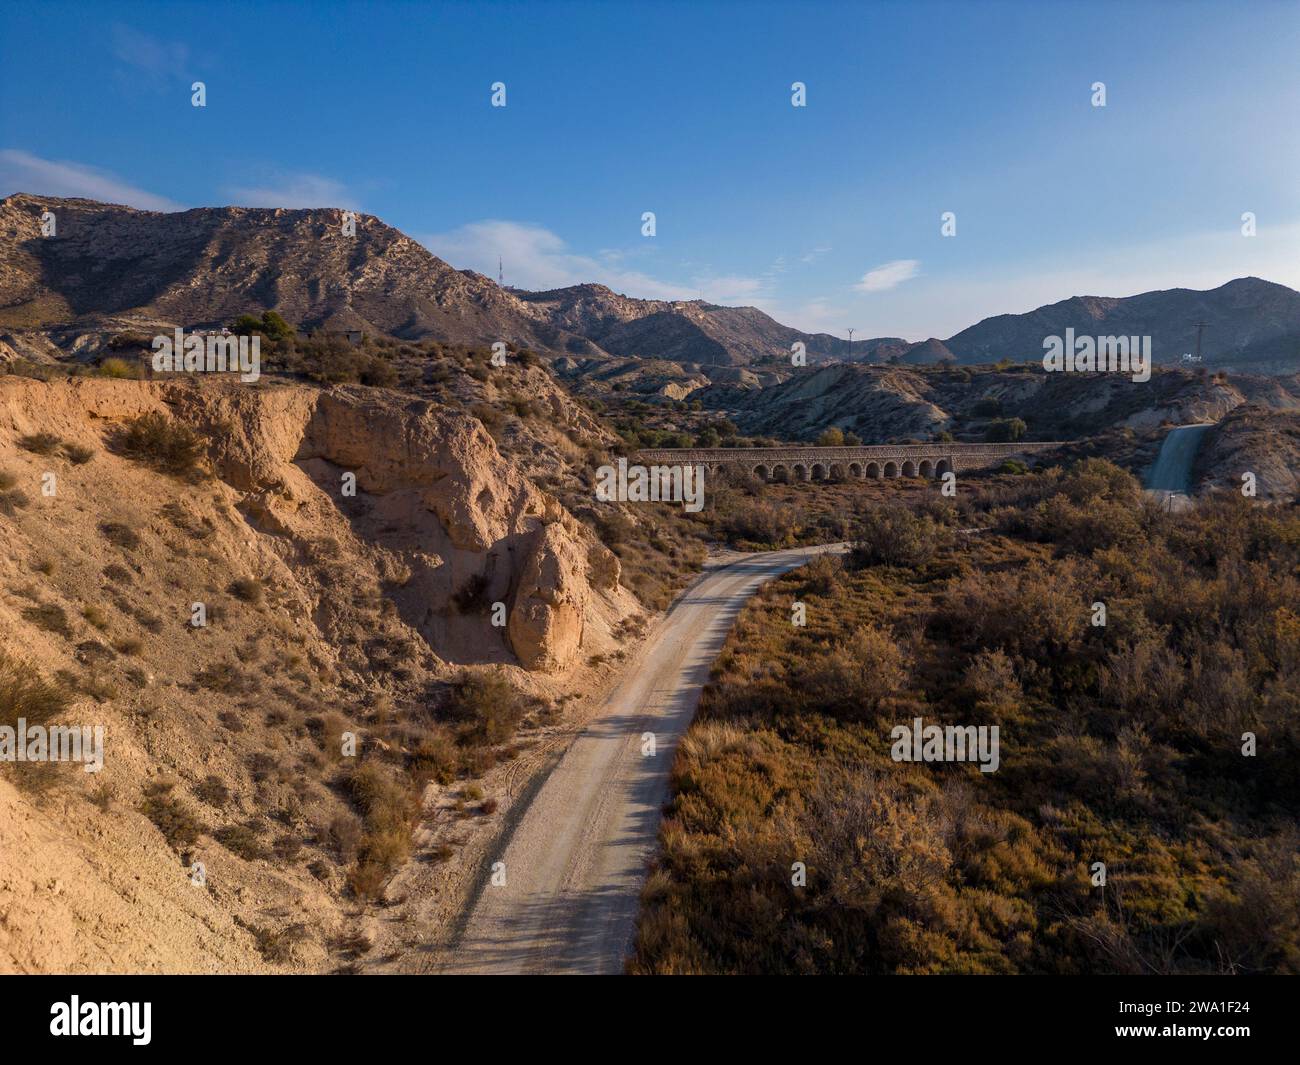 Feldweg in trockener Wüstenlandschaft mit fernen Klippen und Morgensonnenlicht, Elche, Provinz Alicante, Spanien – Stockfoto Stockfoto